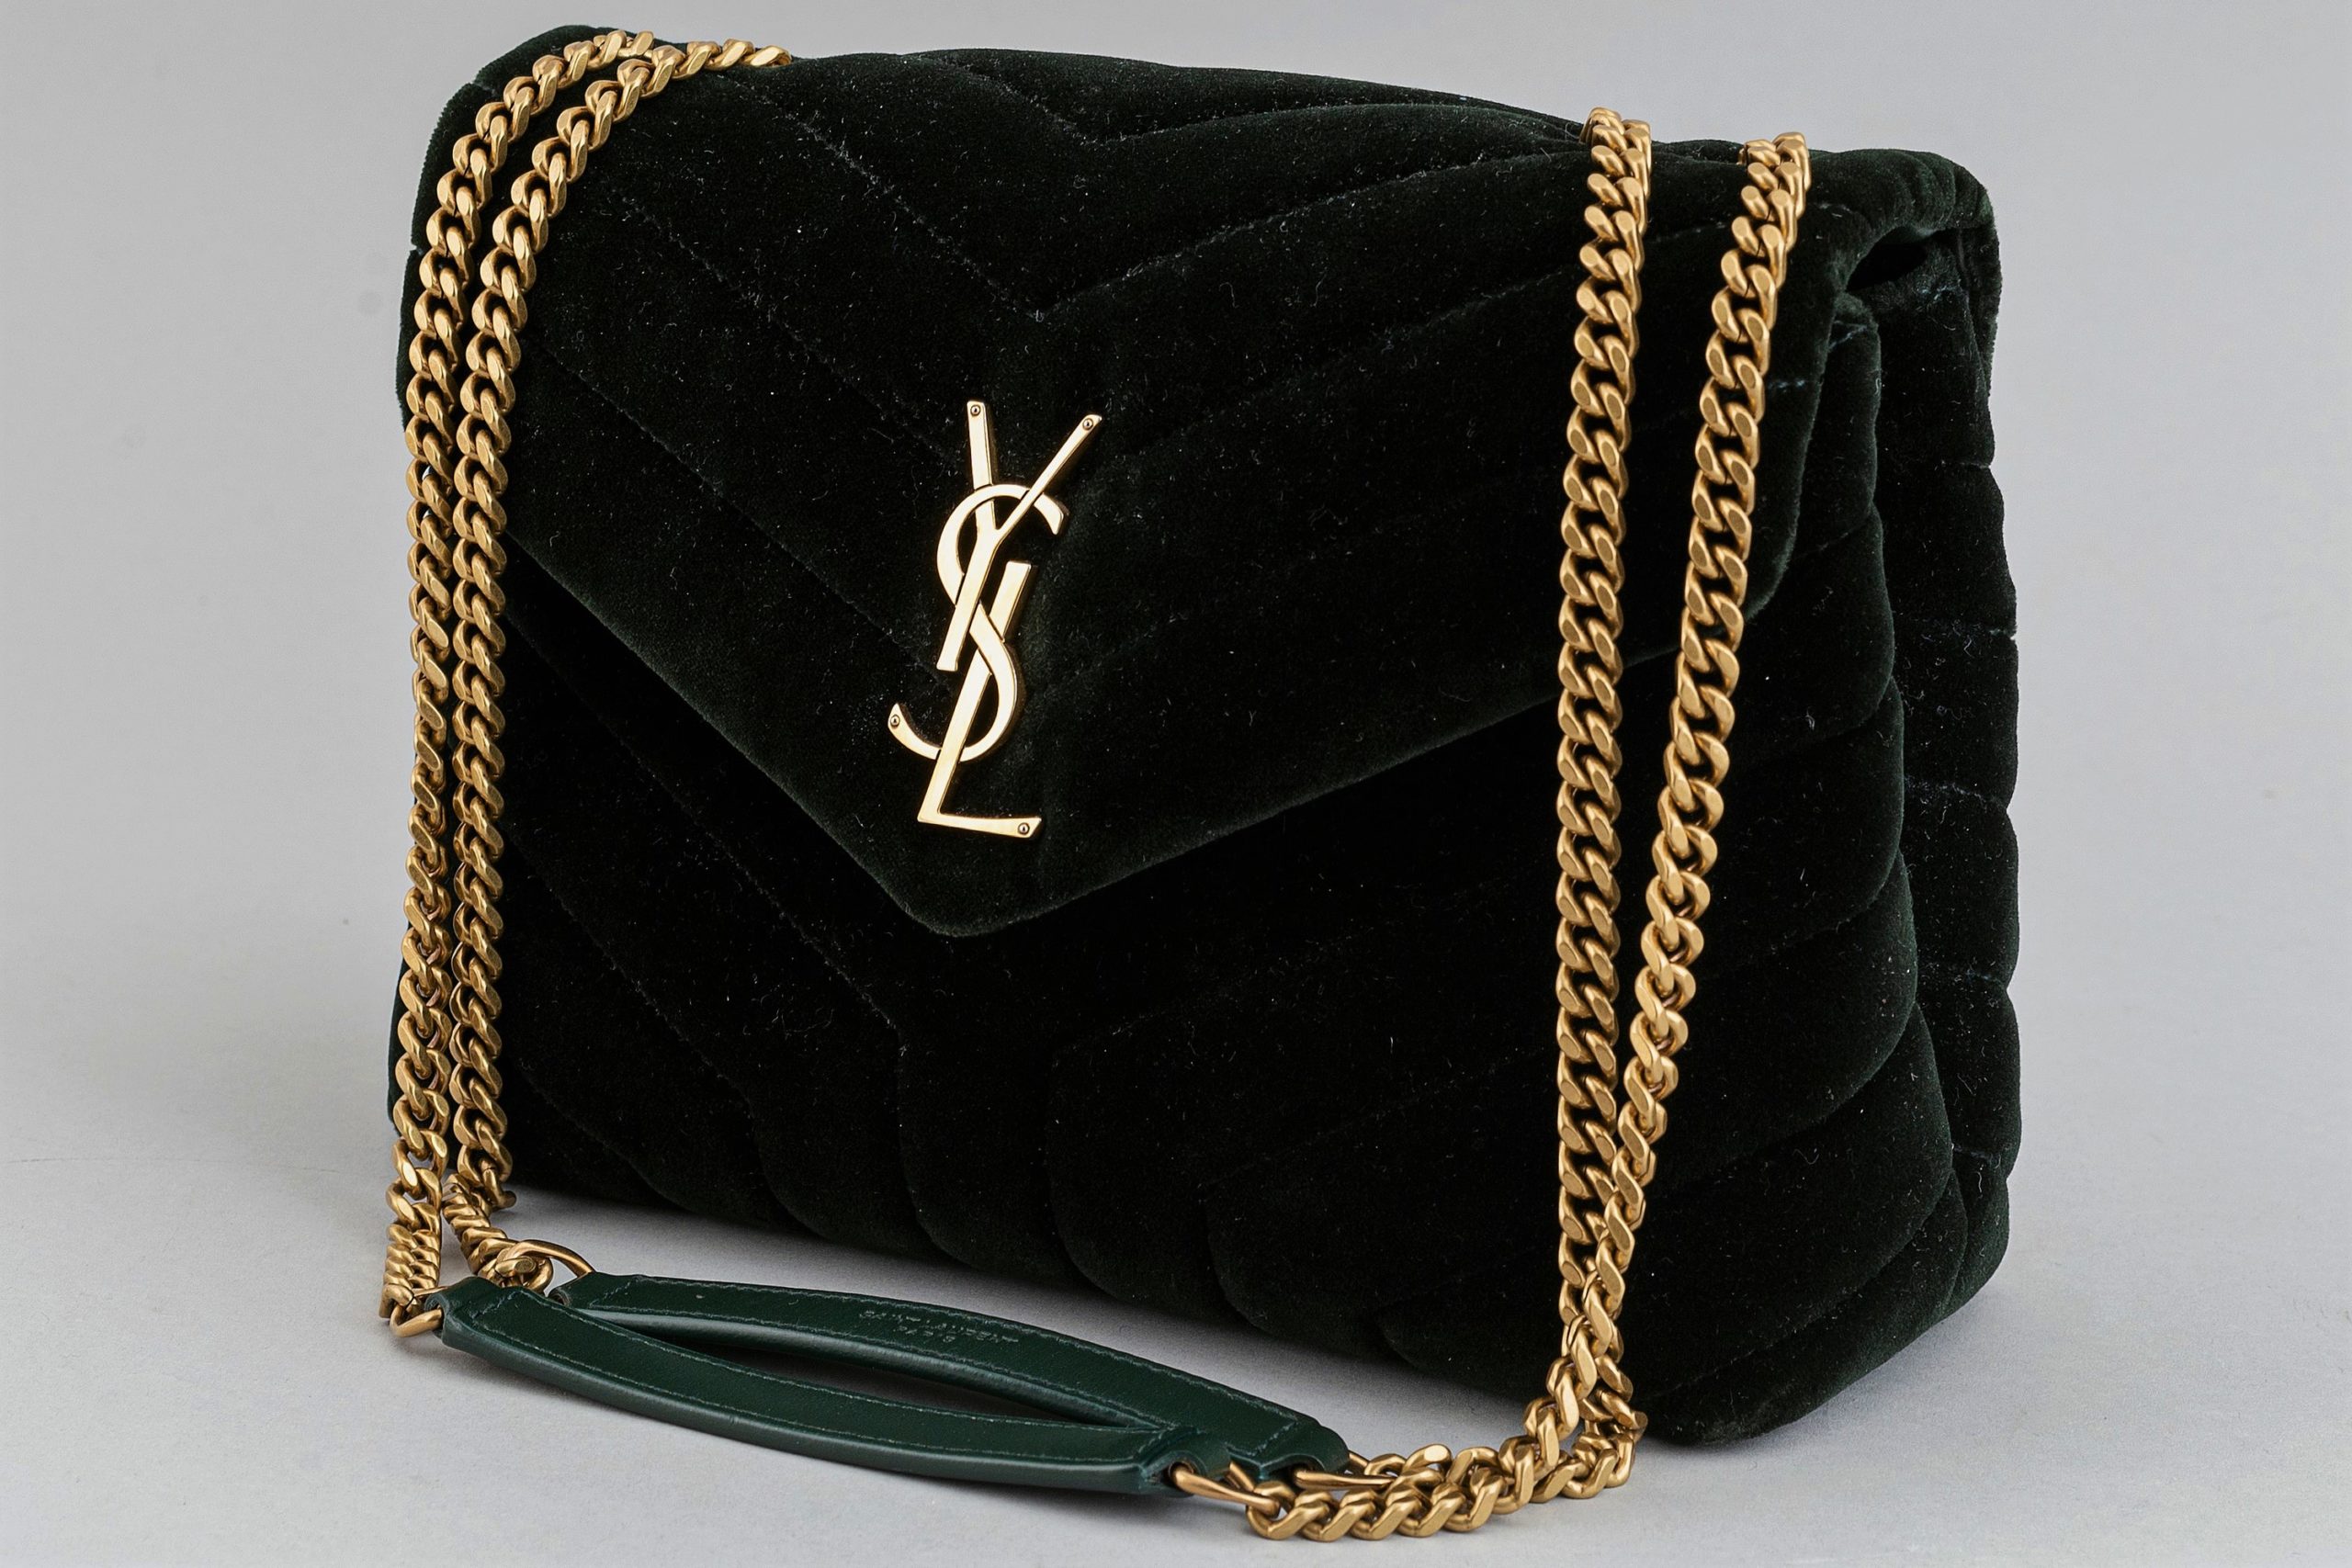 Продать сумку Yves Saint Laurent за один день – информация к размышлению